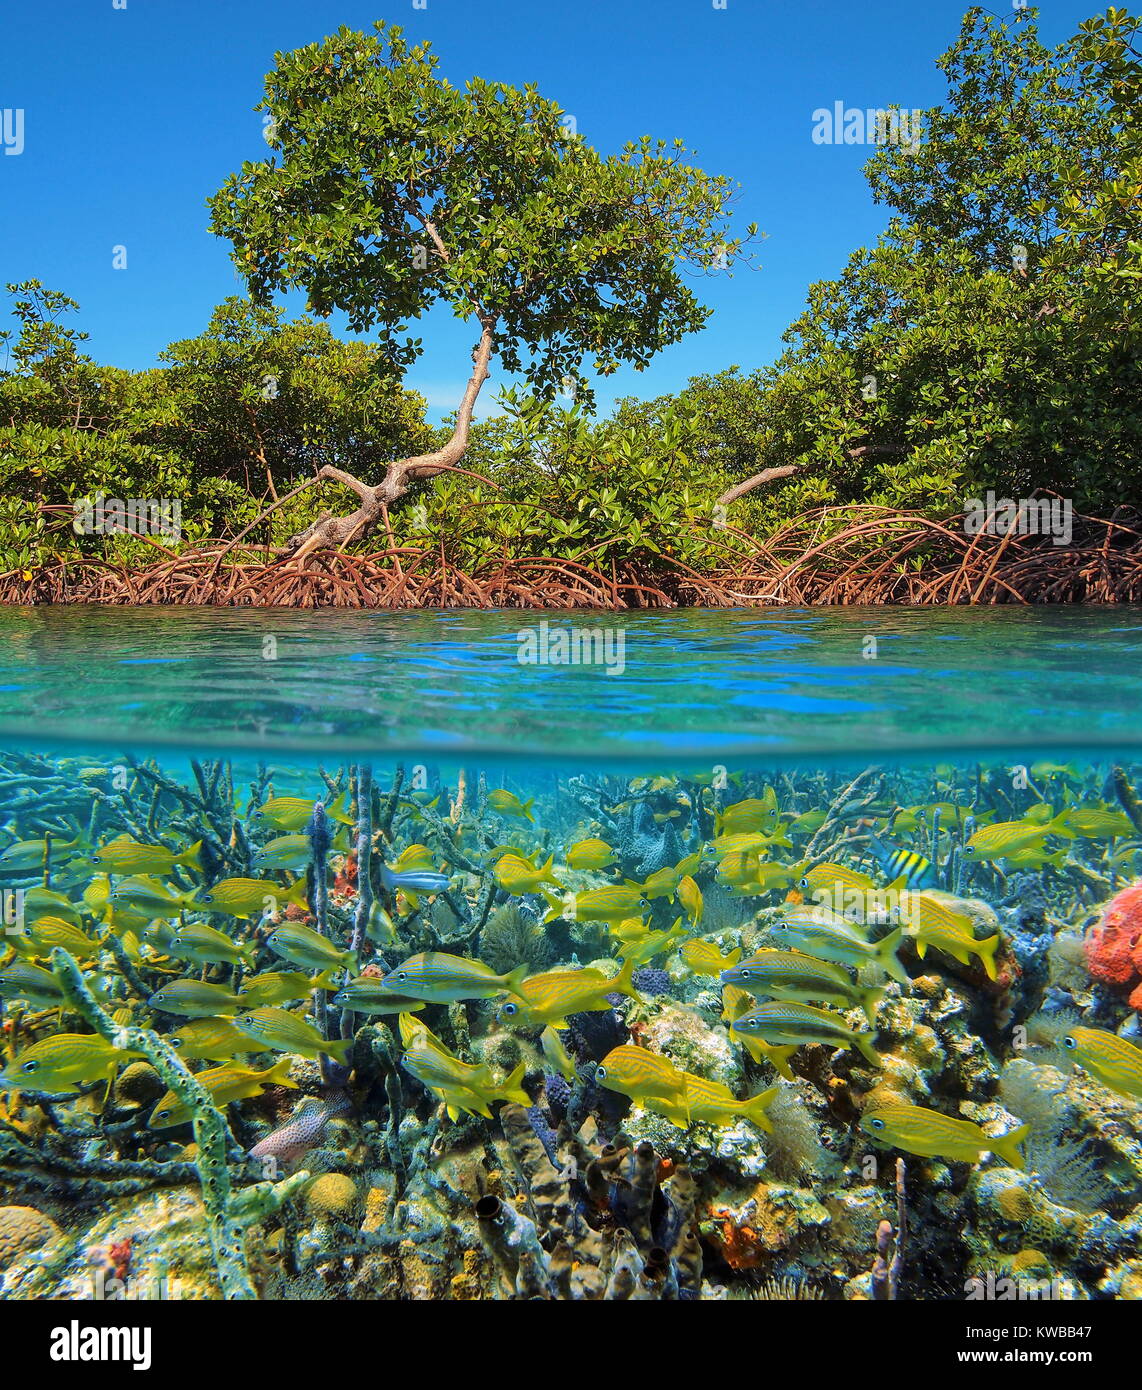 Geteiltes Bild oberhalb und unterhalb der Wasseroberfläche mit Mangroven und einem Schwarm von tropischen Fischen mit meeresschwämmen Unterwasser, Karibik, Panama Stockfoto